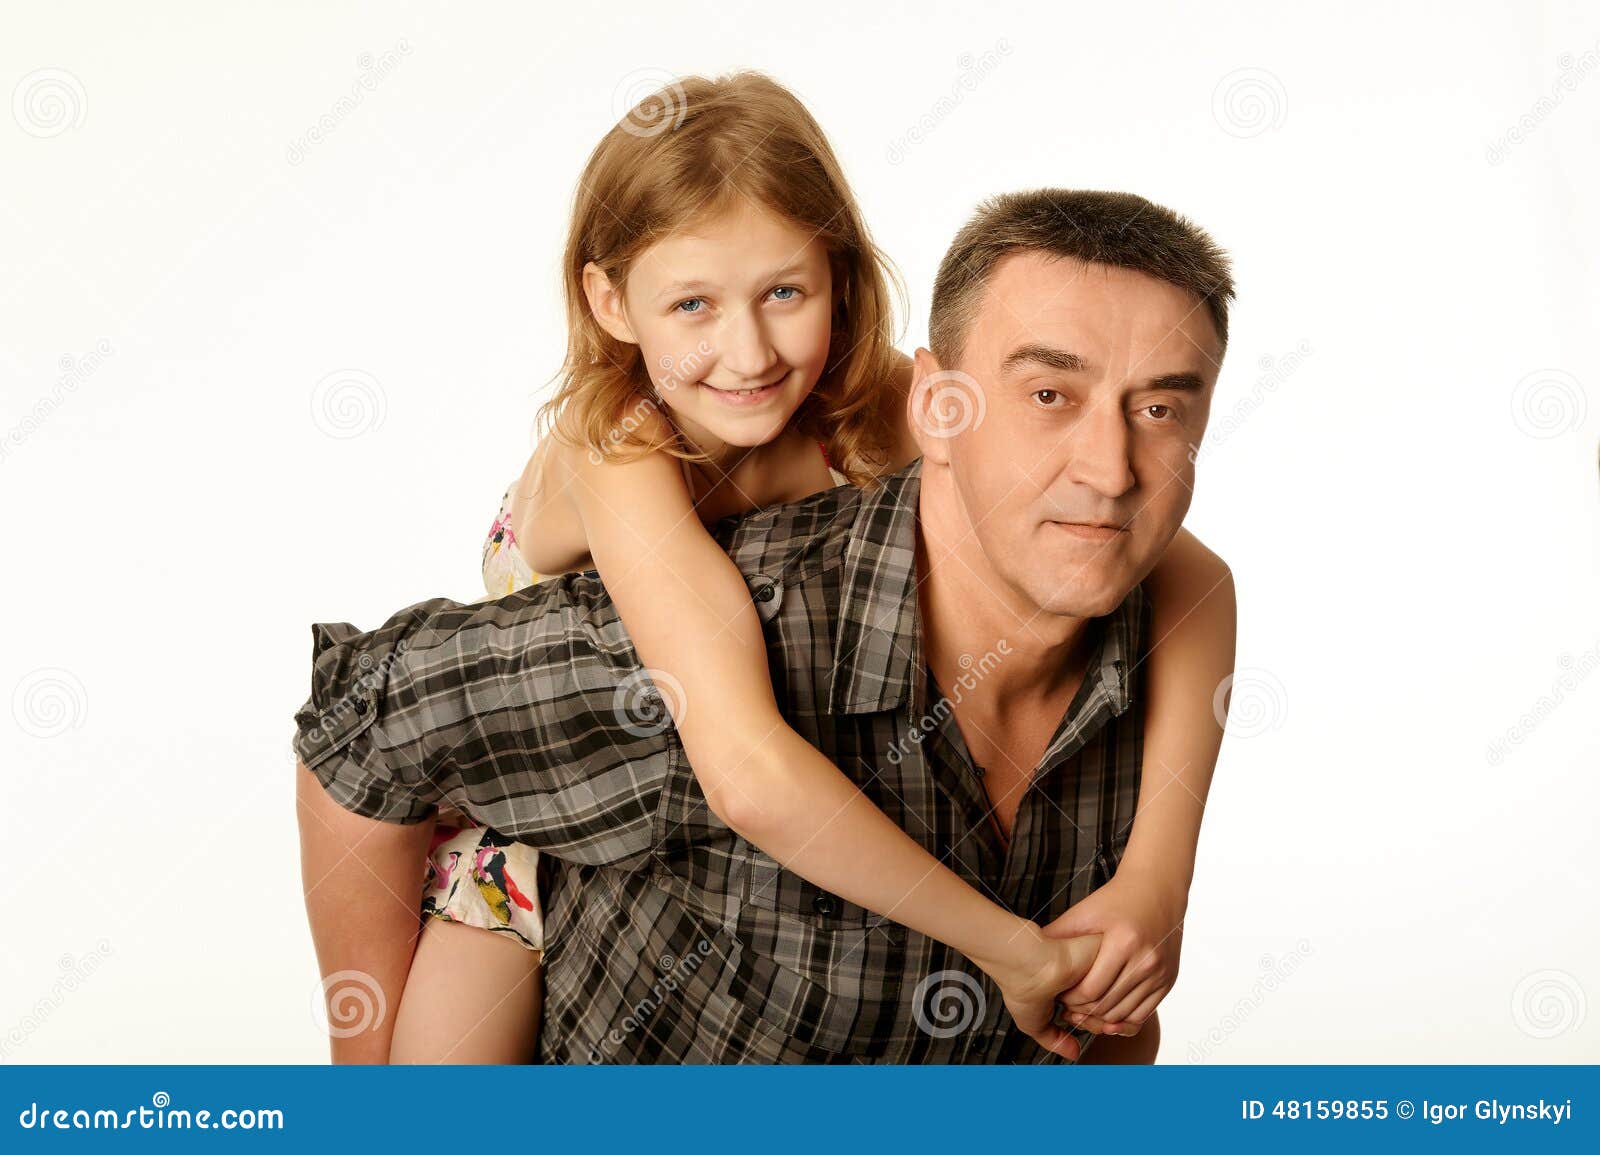 эротика малолетки папа и дочь фото 19